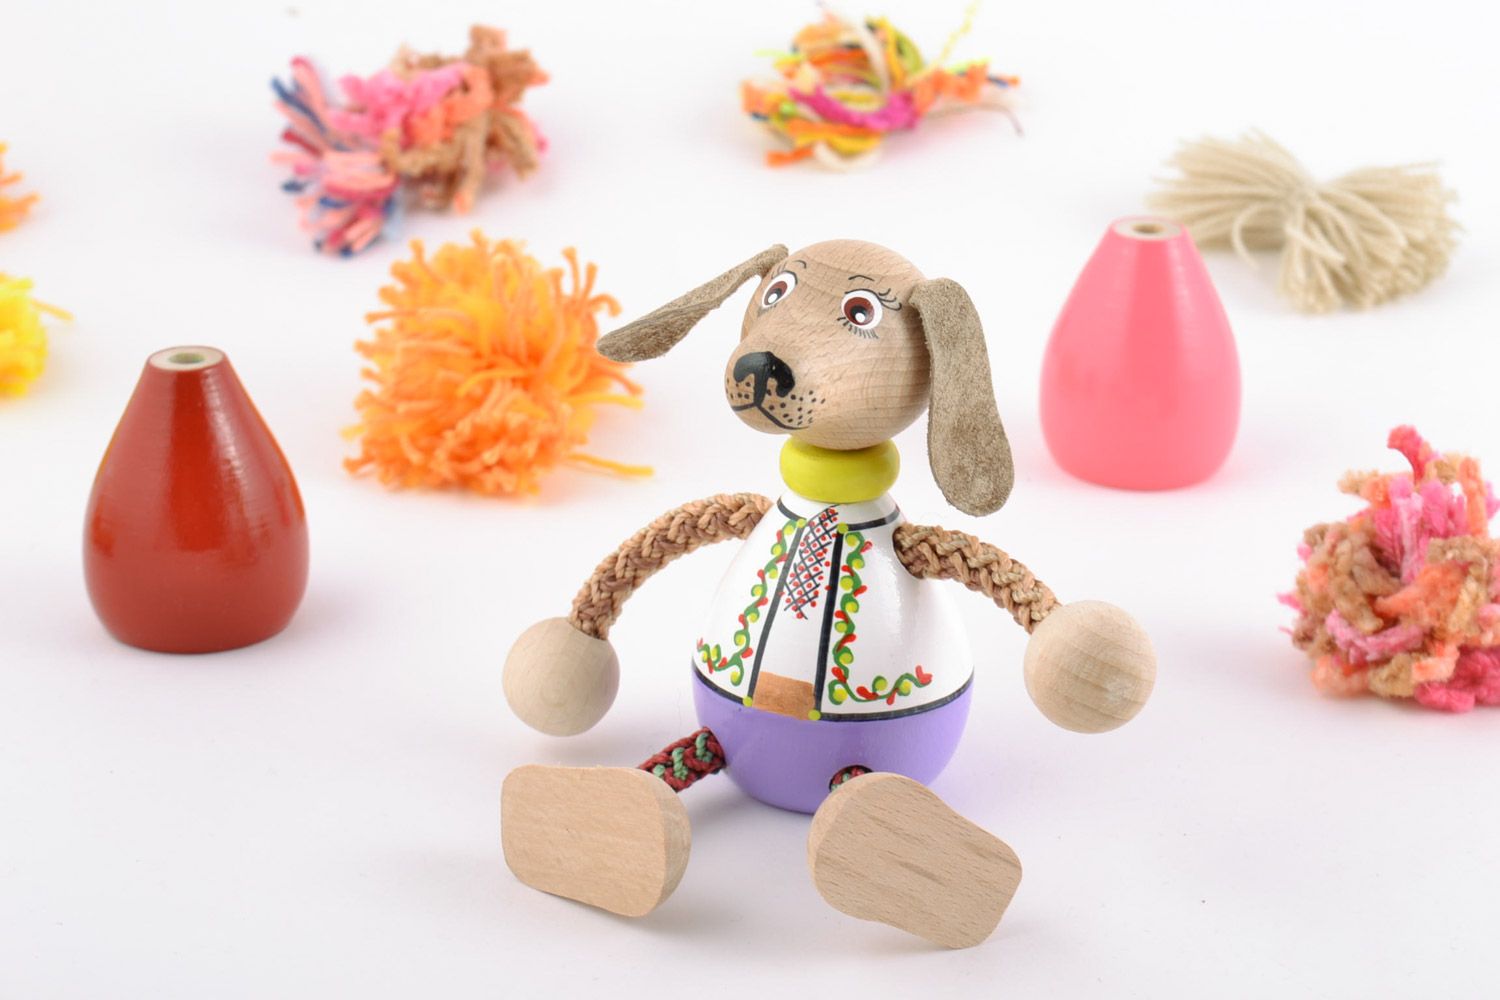 Оригинальная деревянная игрушка Собака ручной работы расписанная эко-красками фото 1